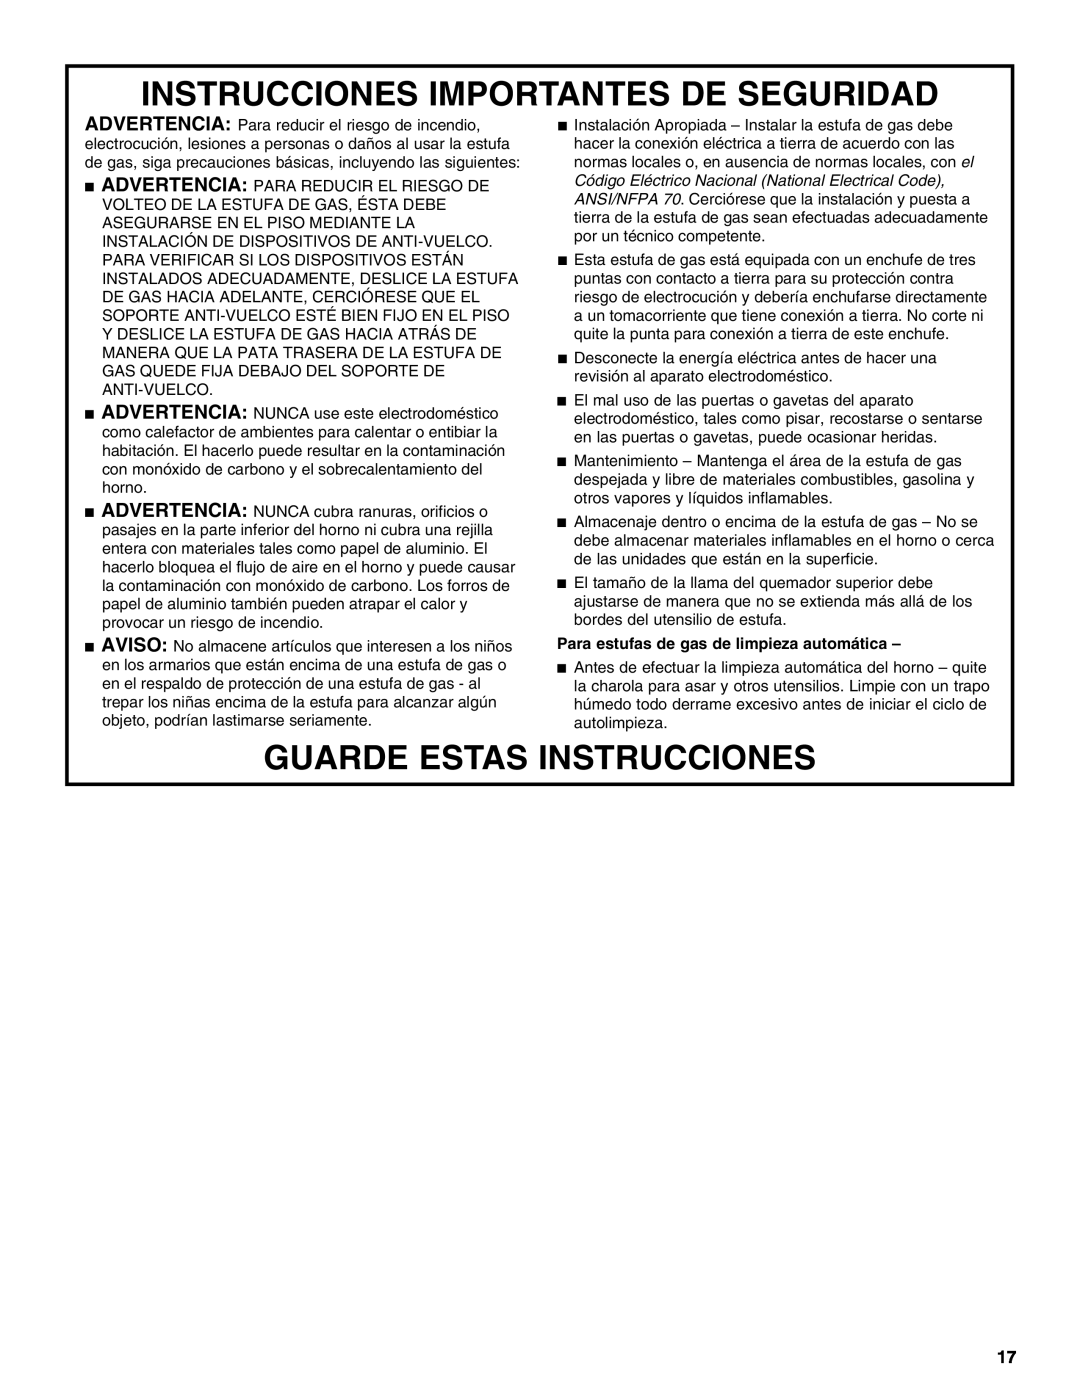 Whirlpool W10106890 manual Instrucciones Importantes De Seguridad, Guarde Estas Instrucciones 